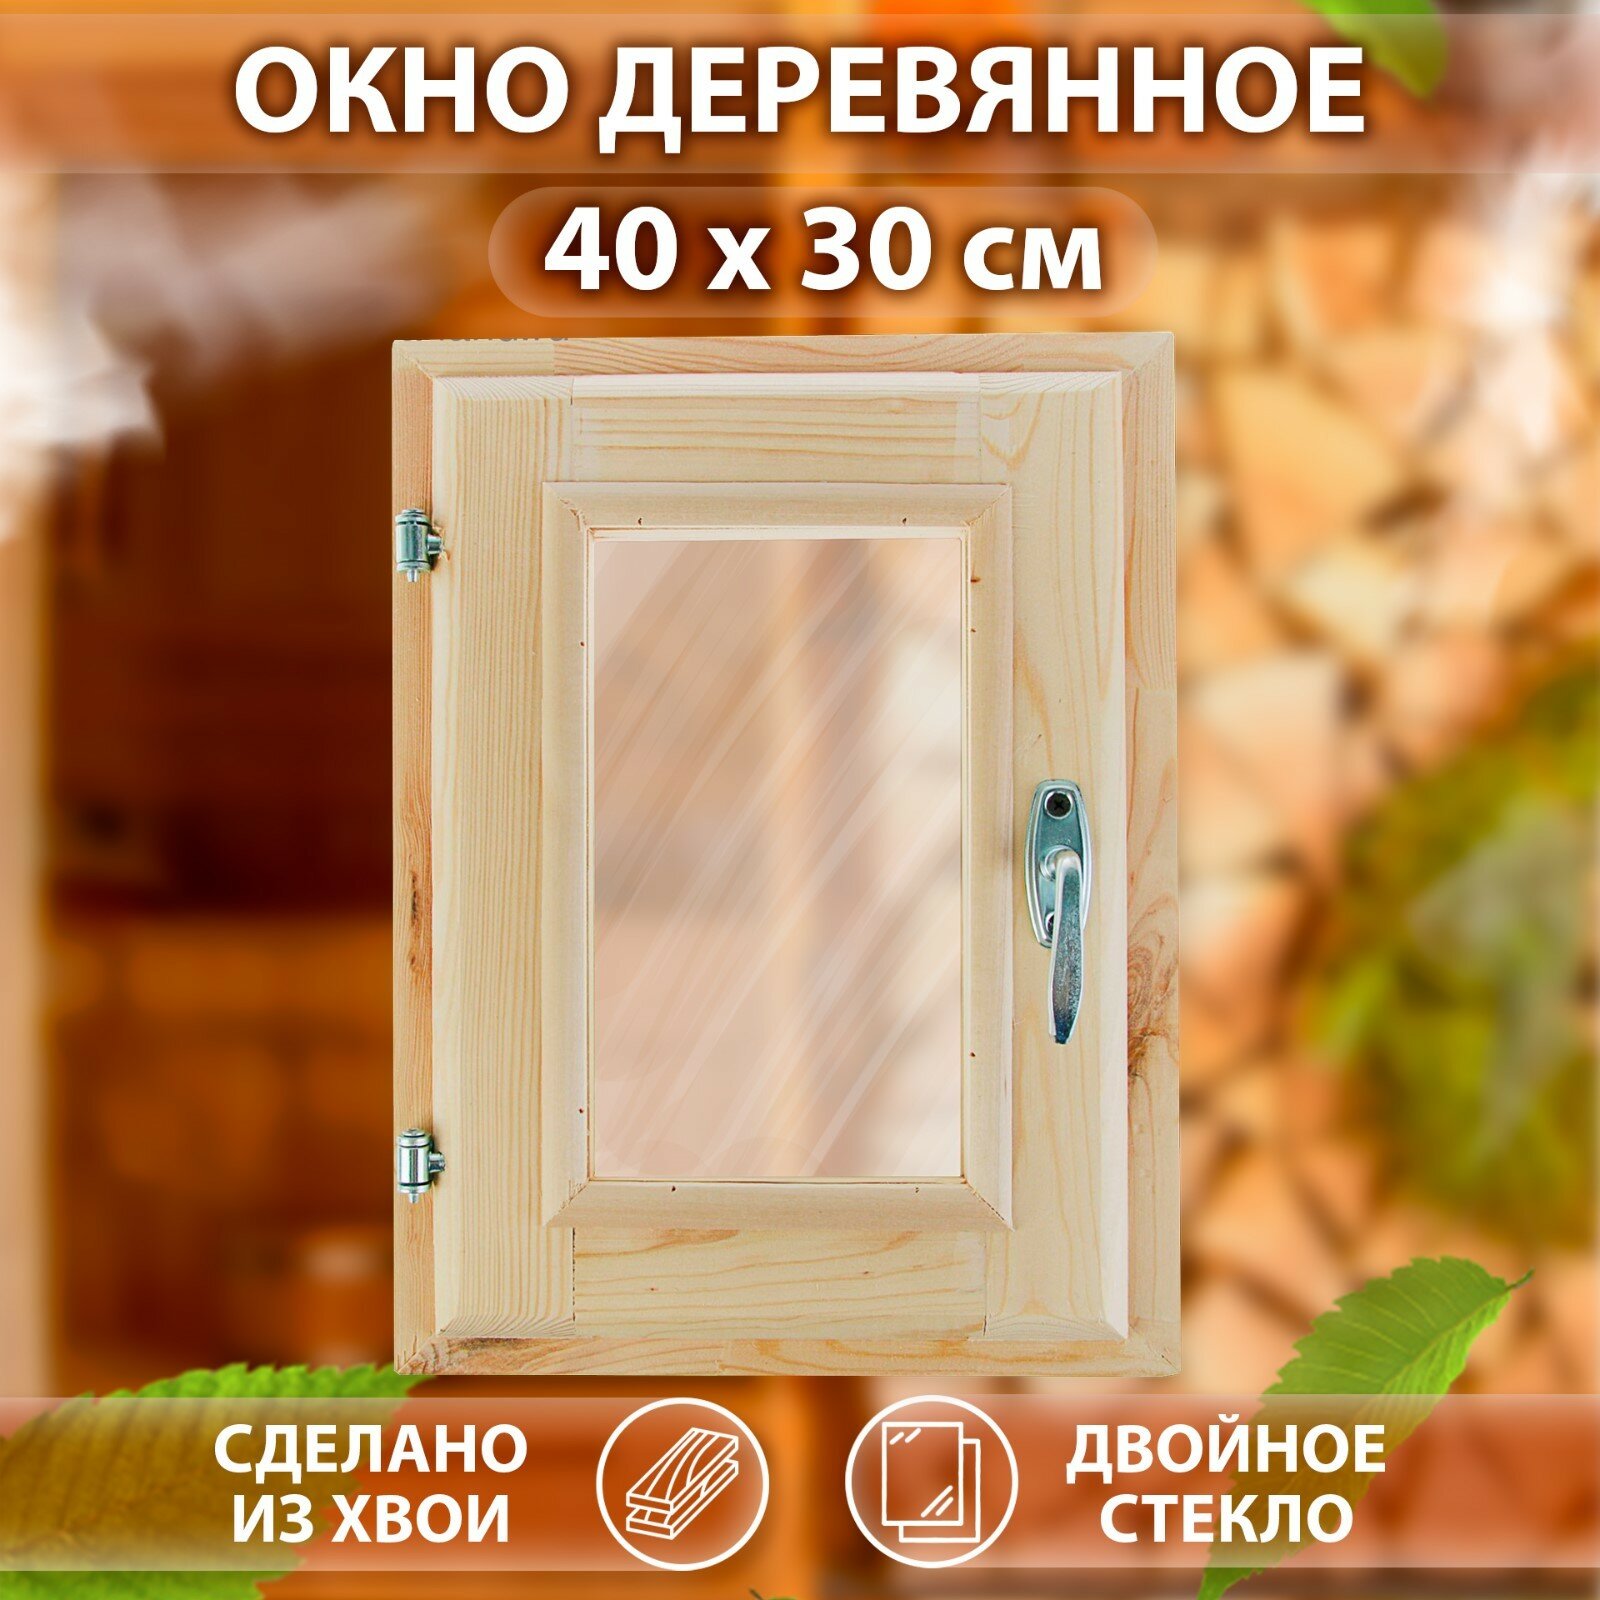 Окно, 40×30см, двойное стекло, из хвои